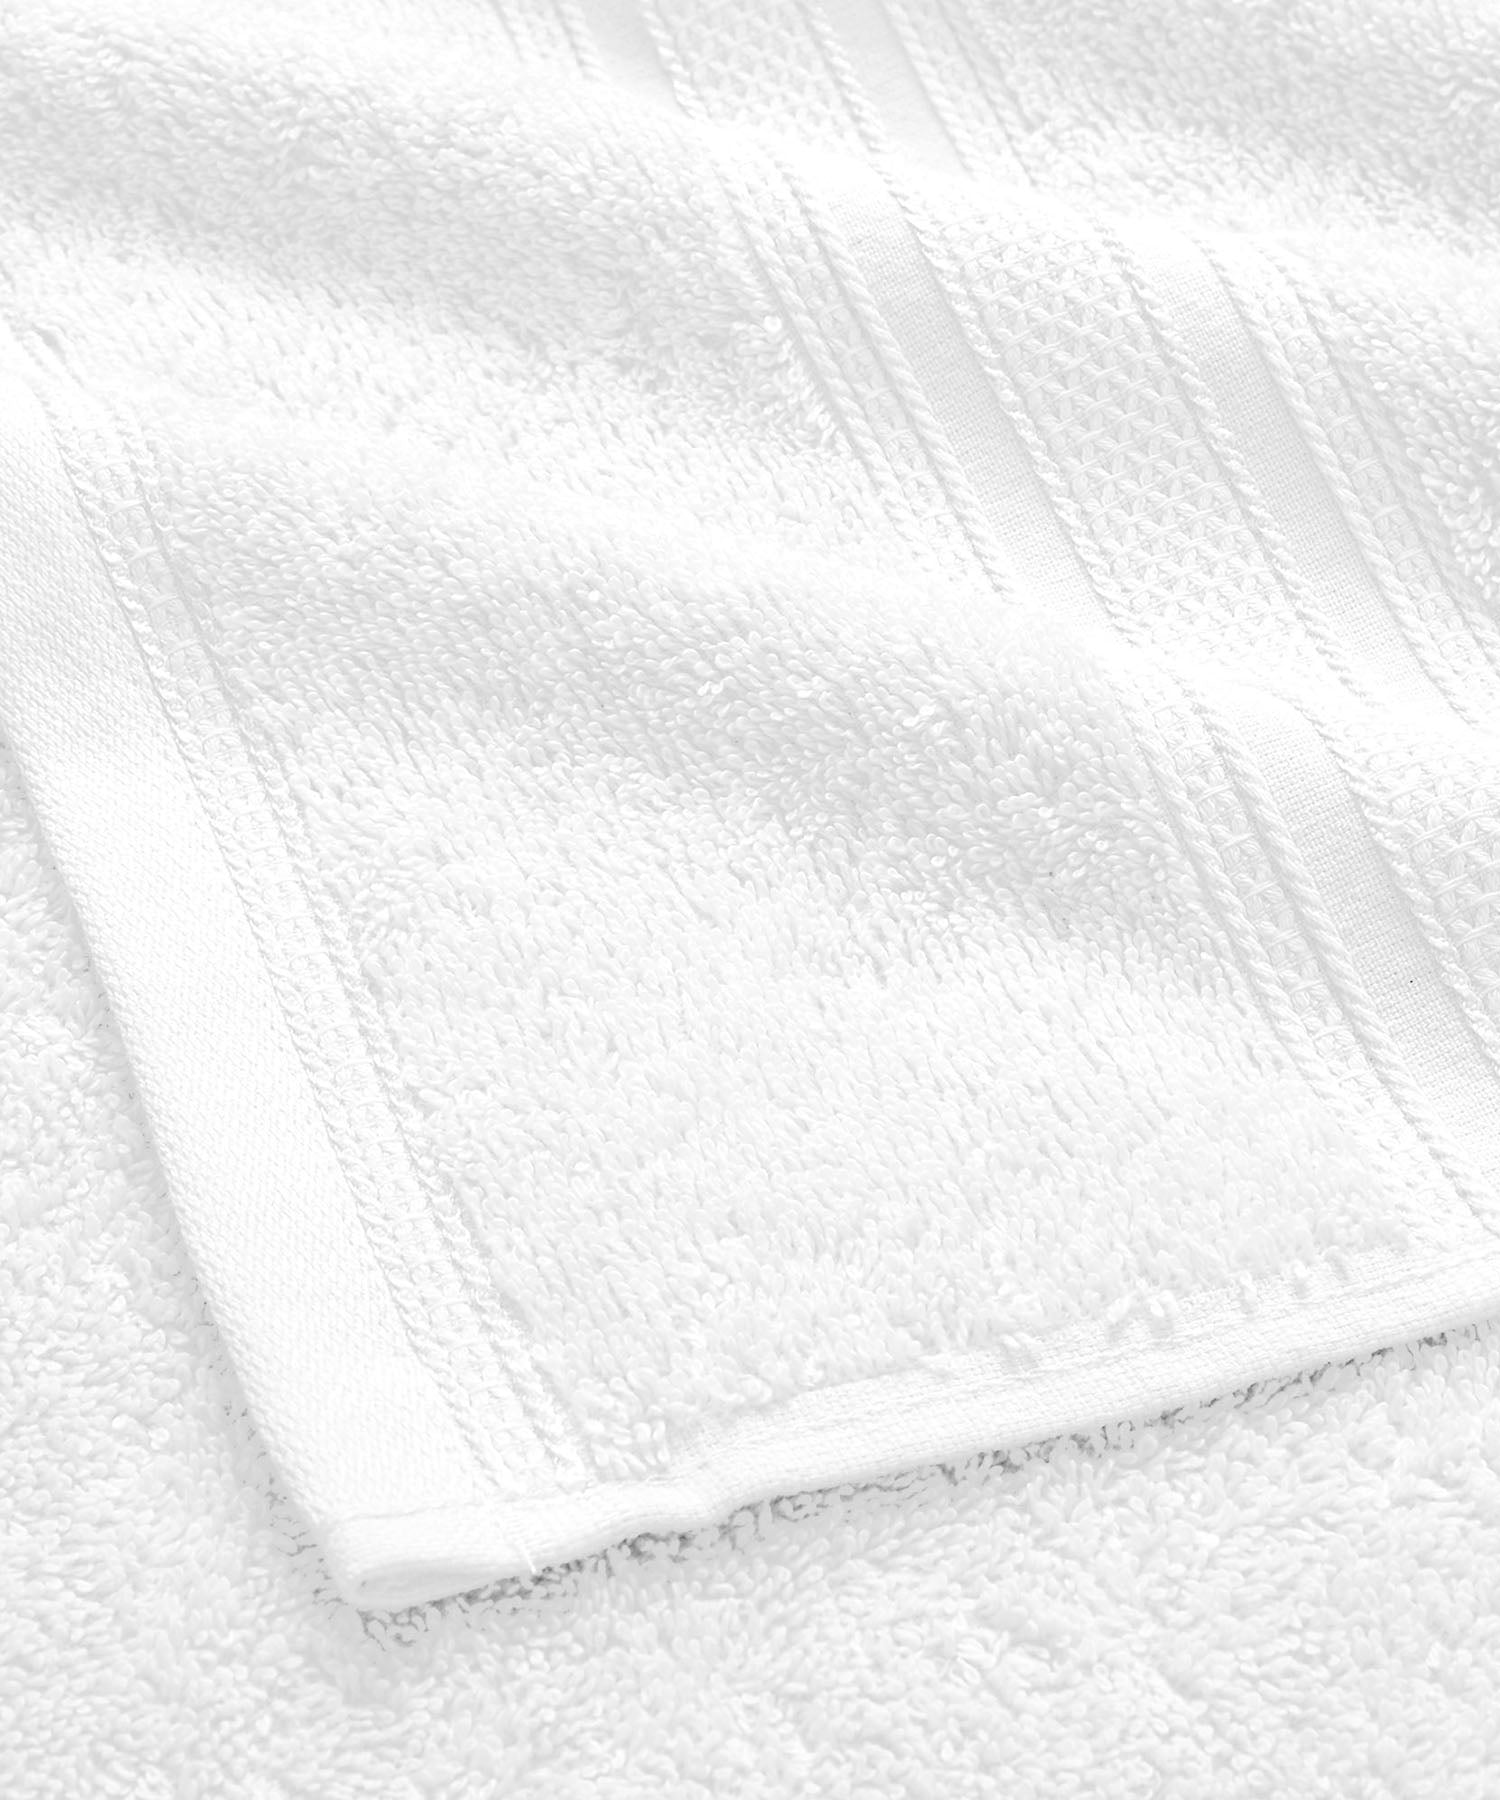 3Pc Face Towel Set ₹313/-